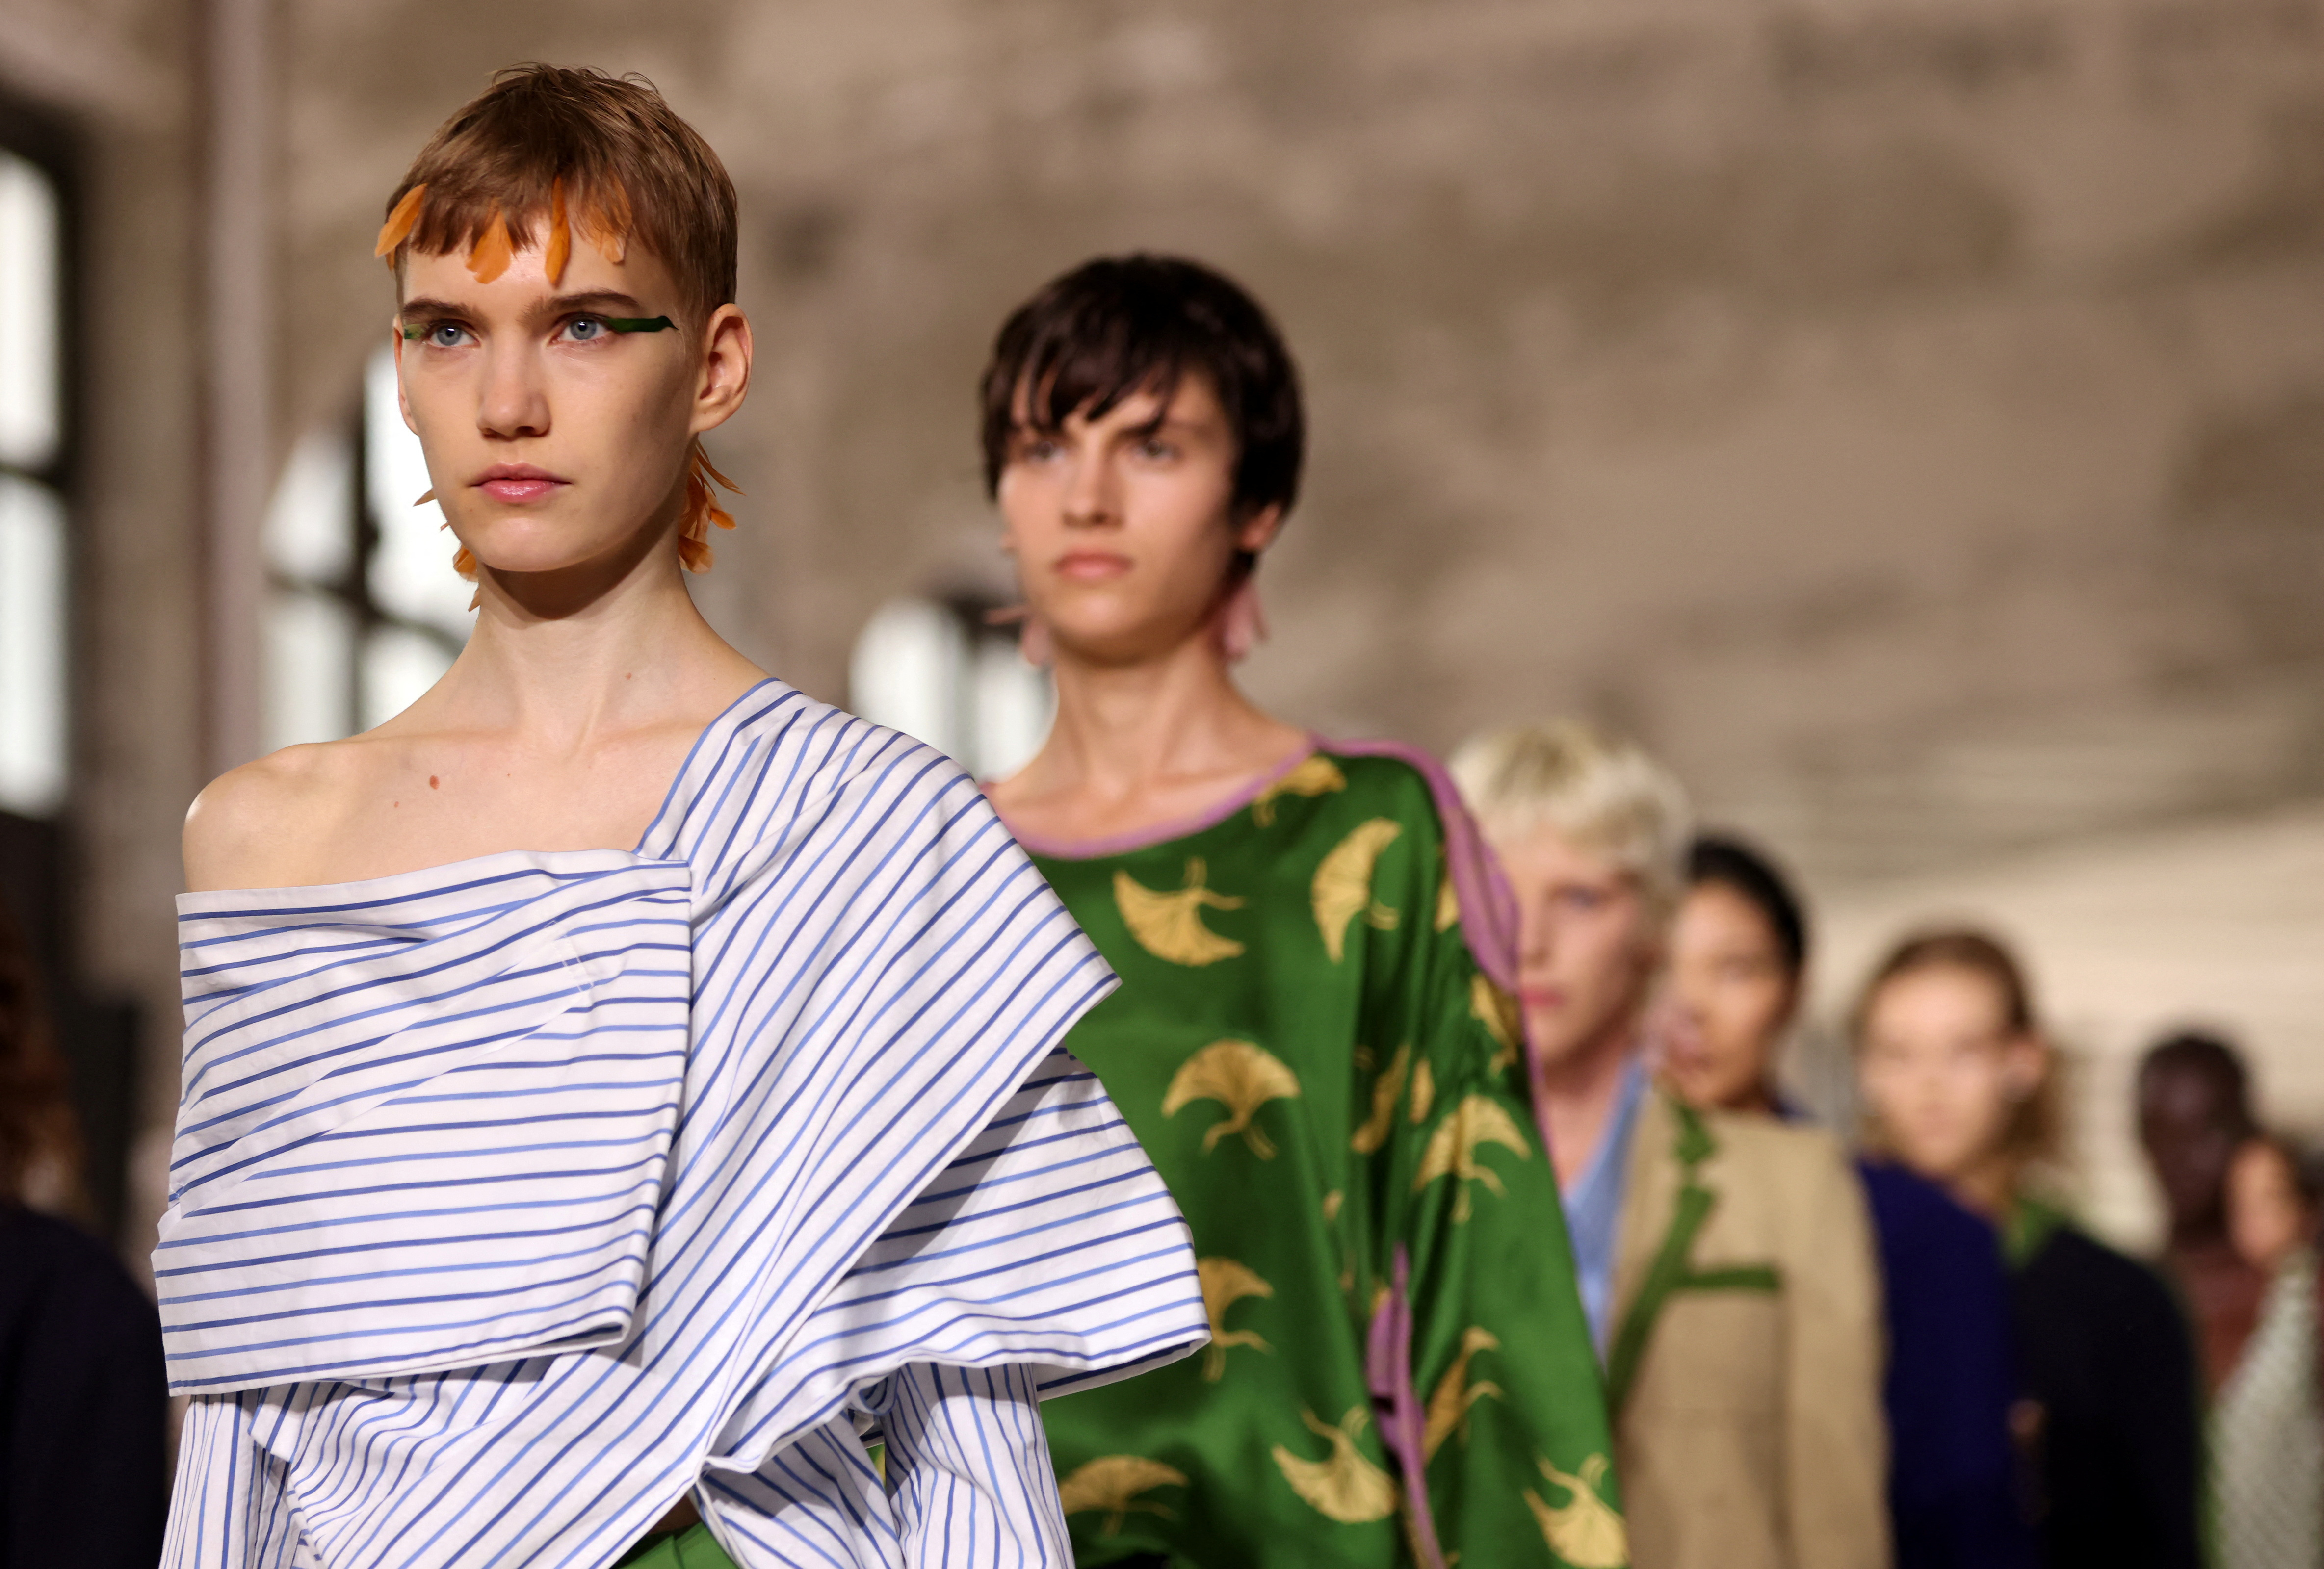 Dries Van Noten shows layered tailoring at Paris Fashion Week